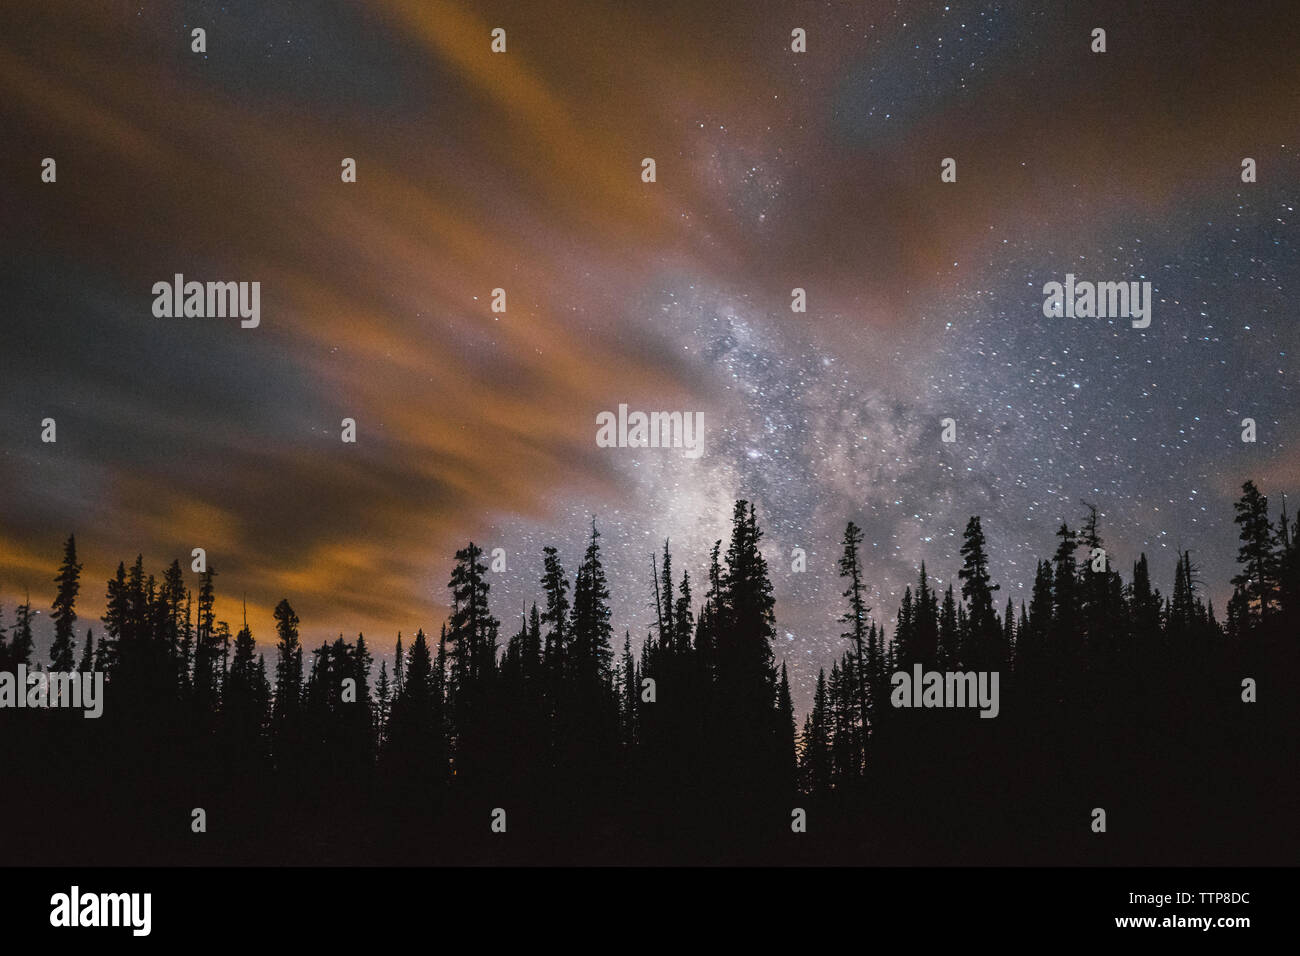 Vista panoramica di silhouette alberi contro il cielo stellato Foto Stock